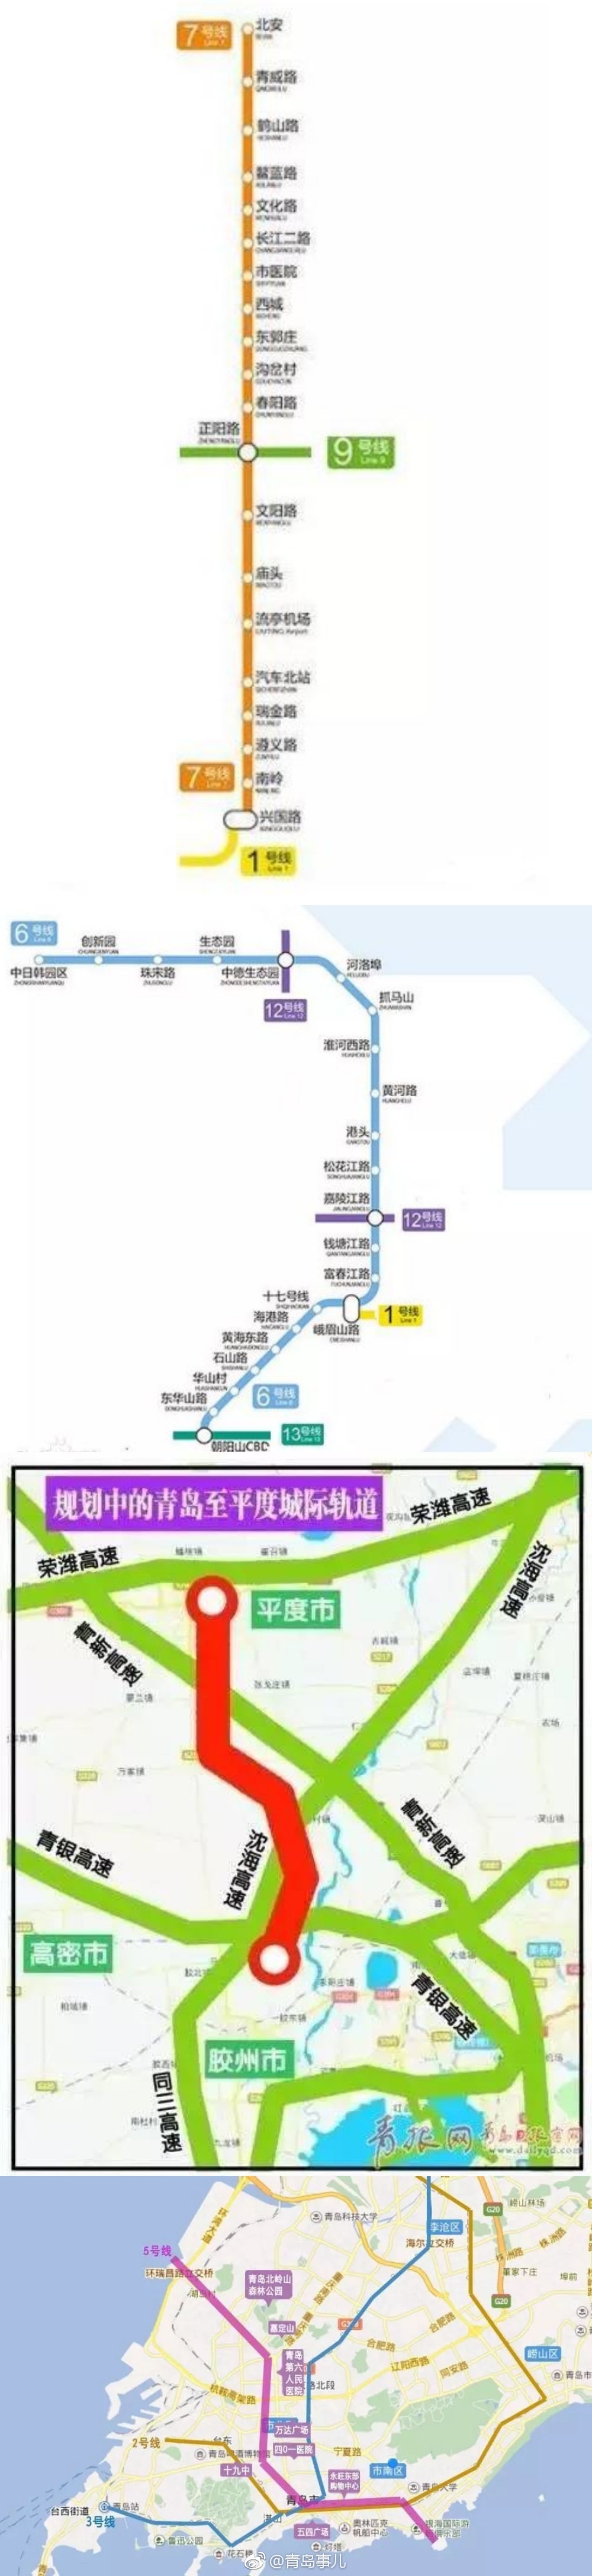 青岛地铁8号线新进展!1号线明年开通 有路过你家的吗